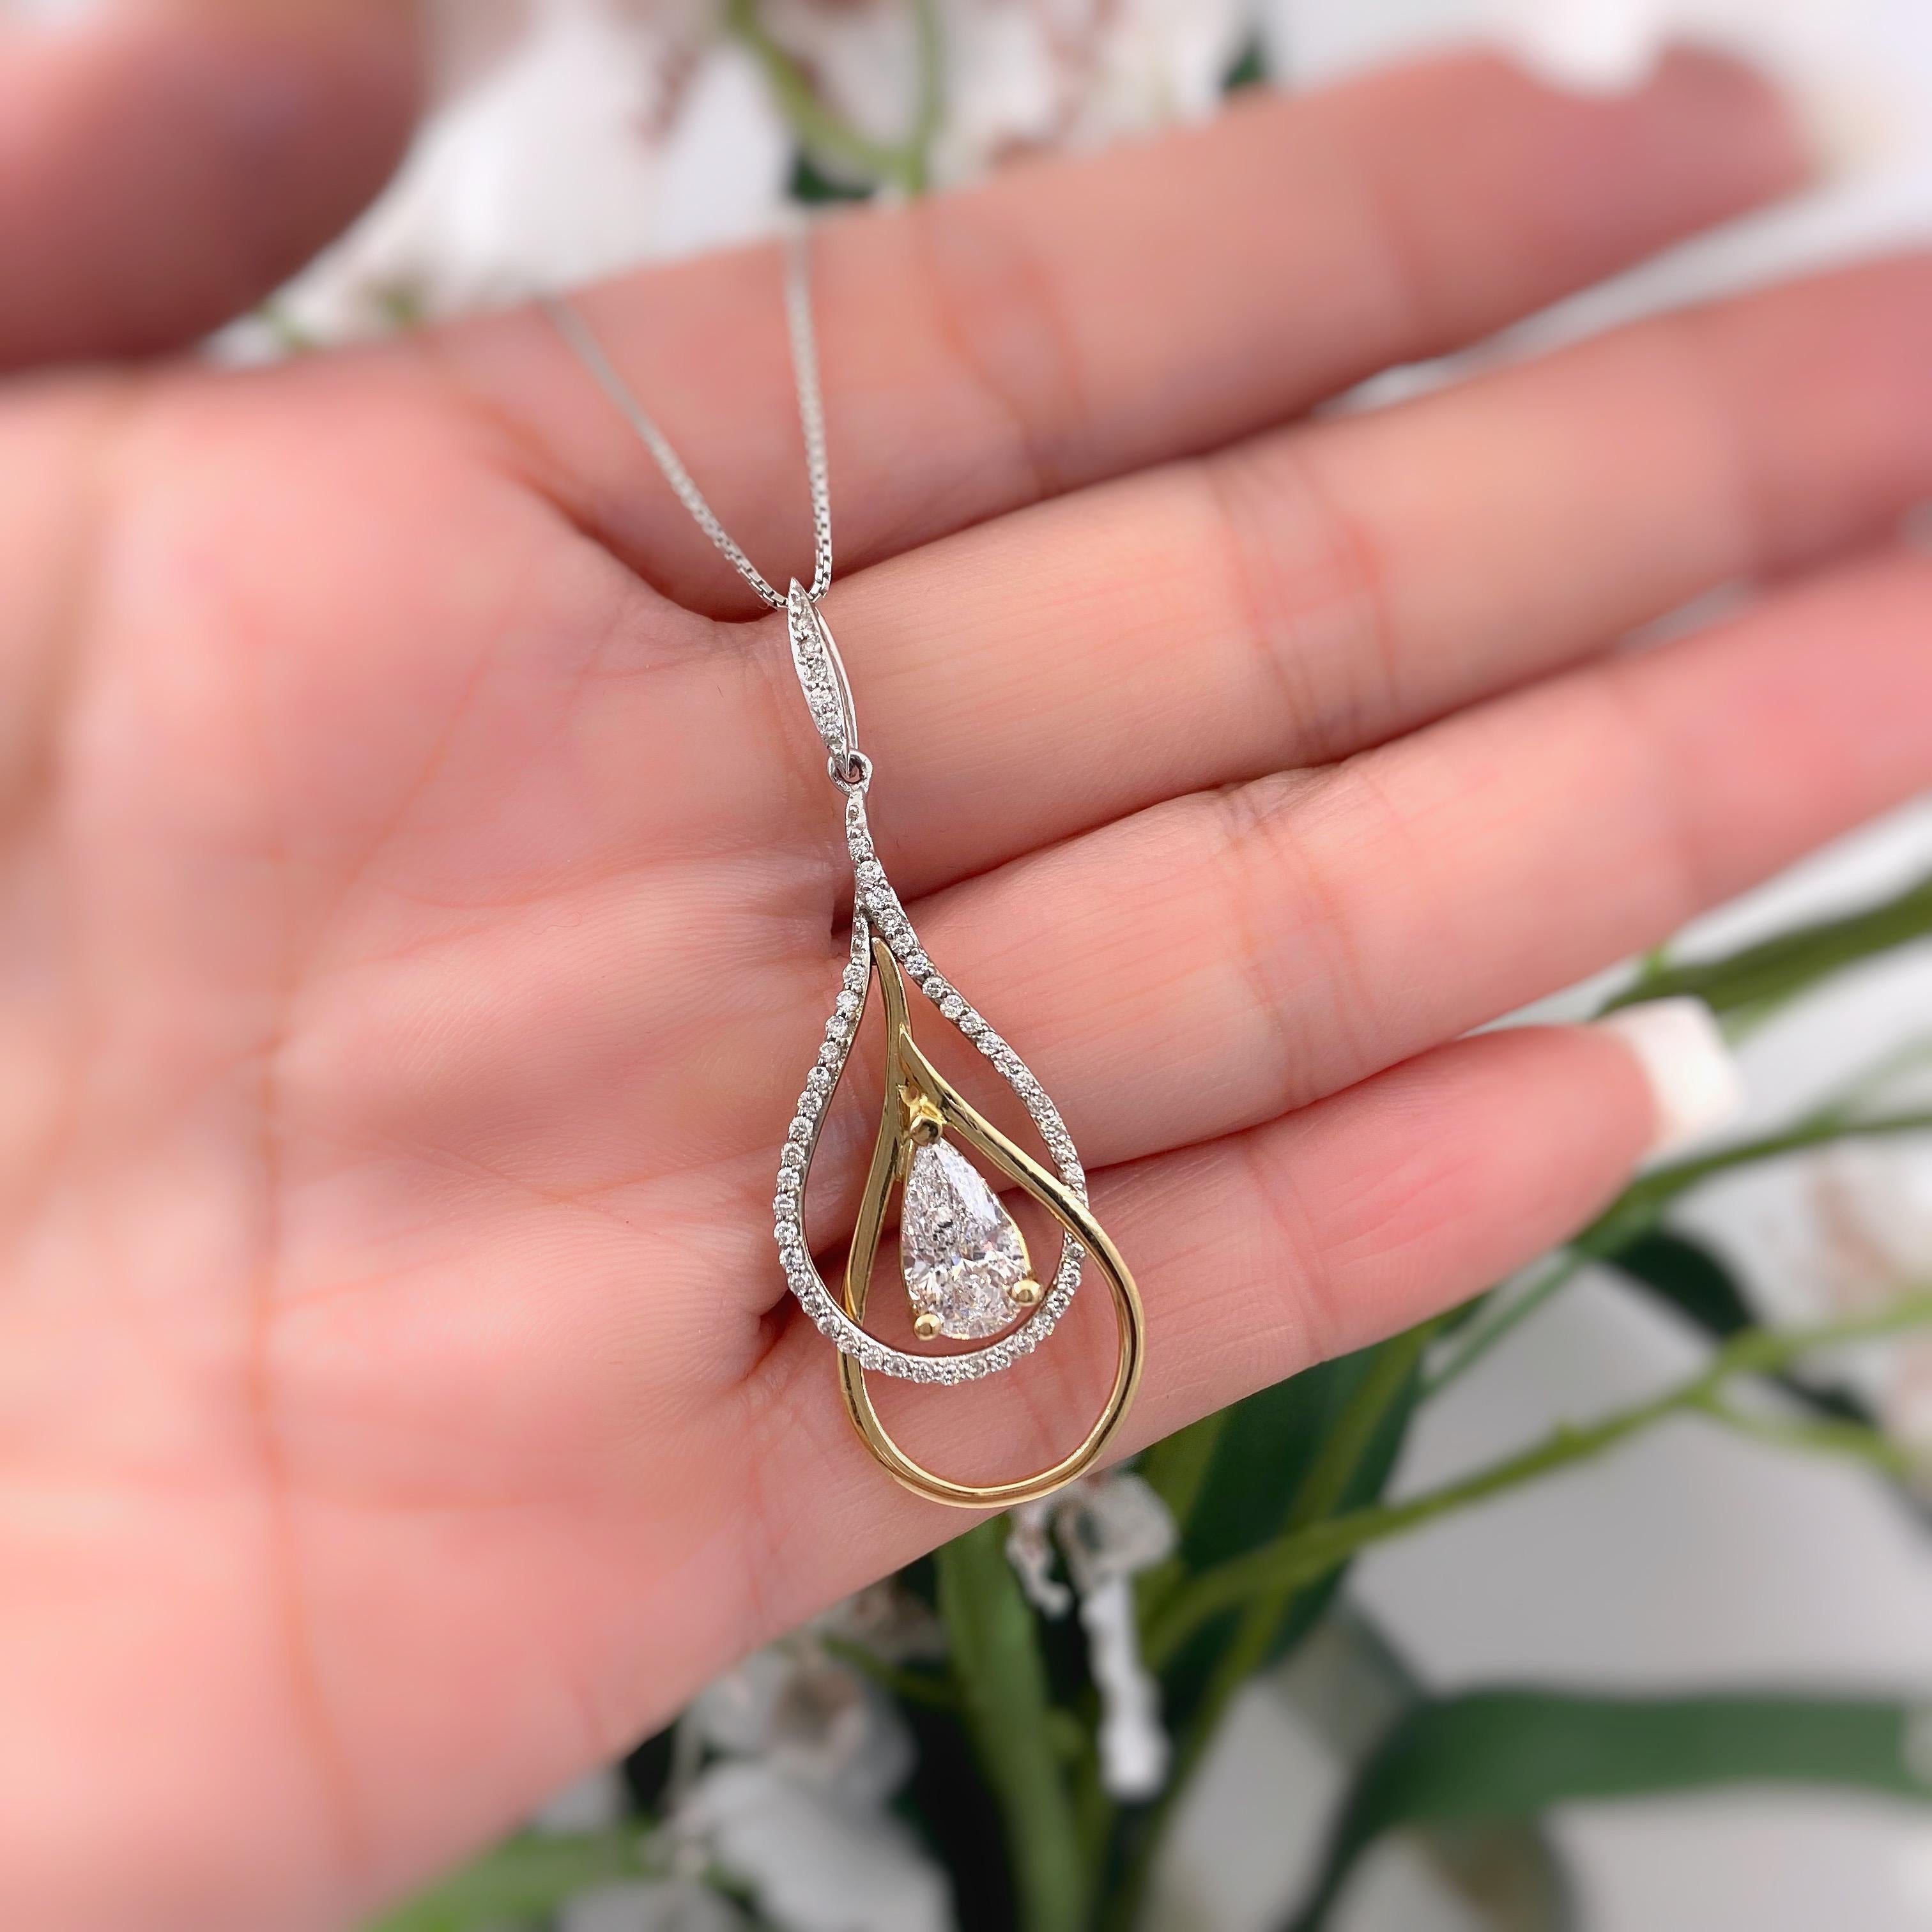 pear diamond necklace